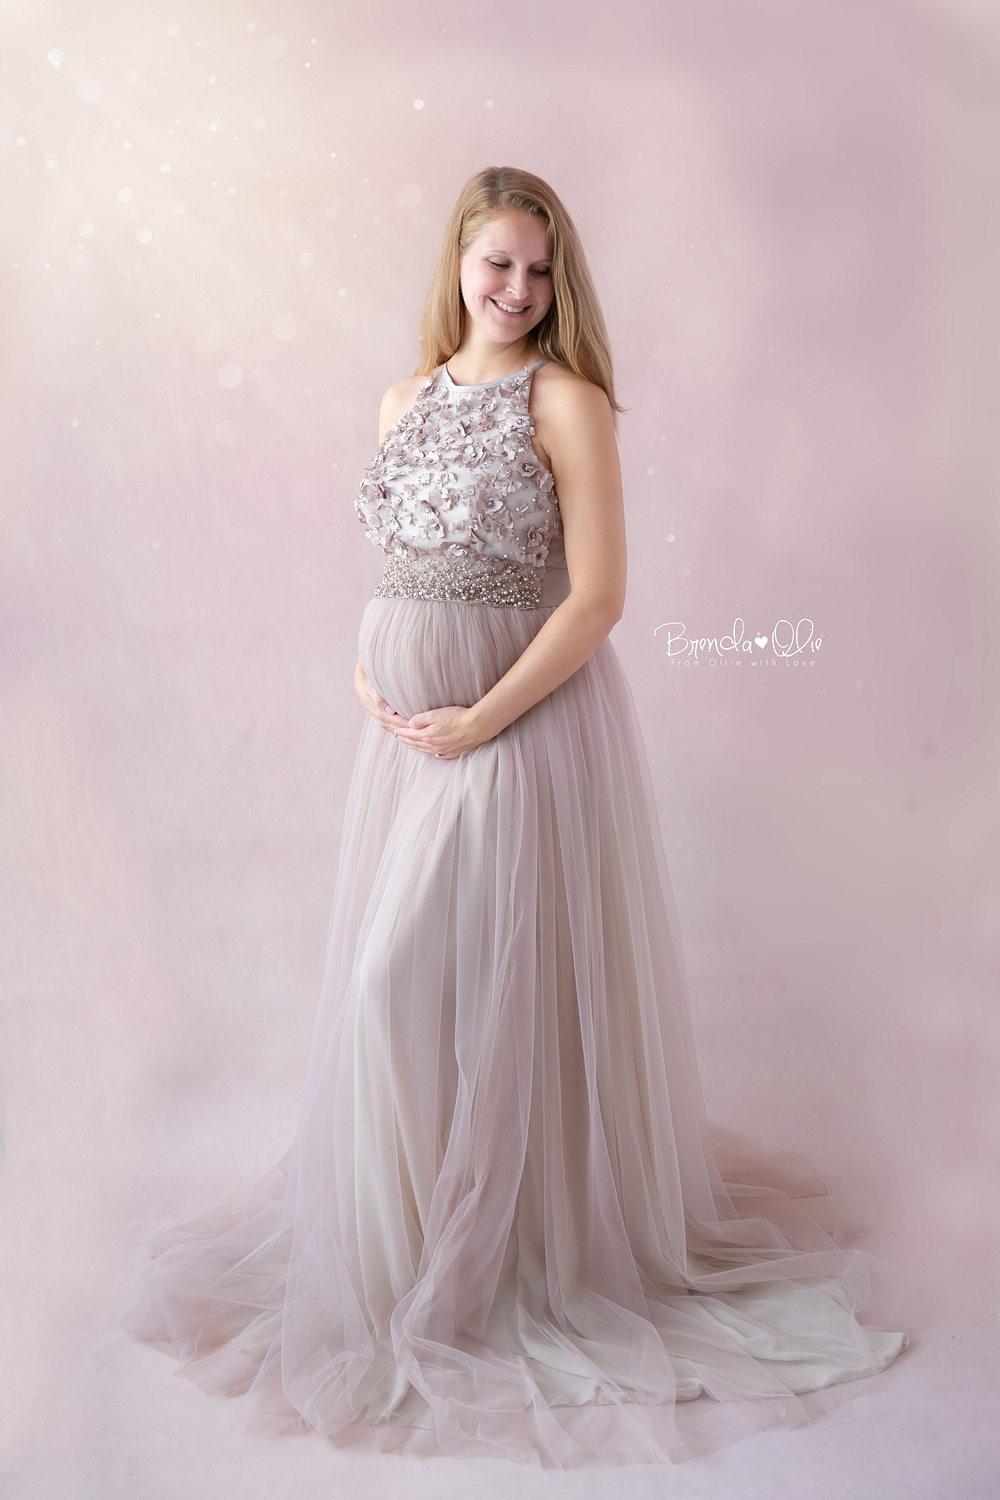 zwangere vrouw fotoshoot met prachtige jurk en glitters